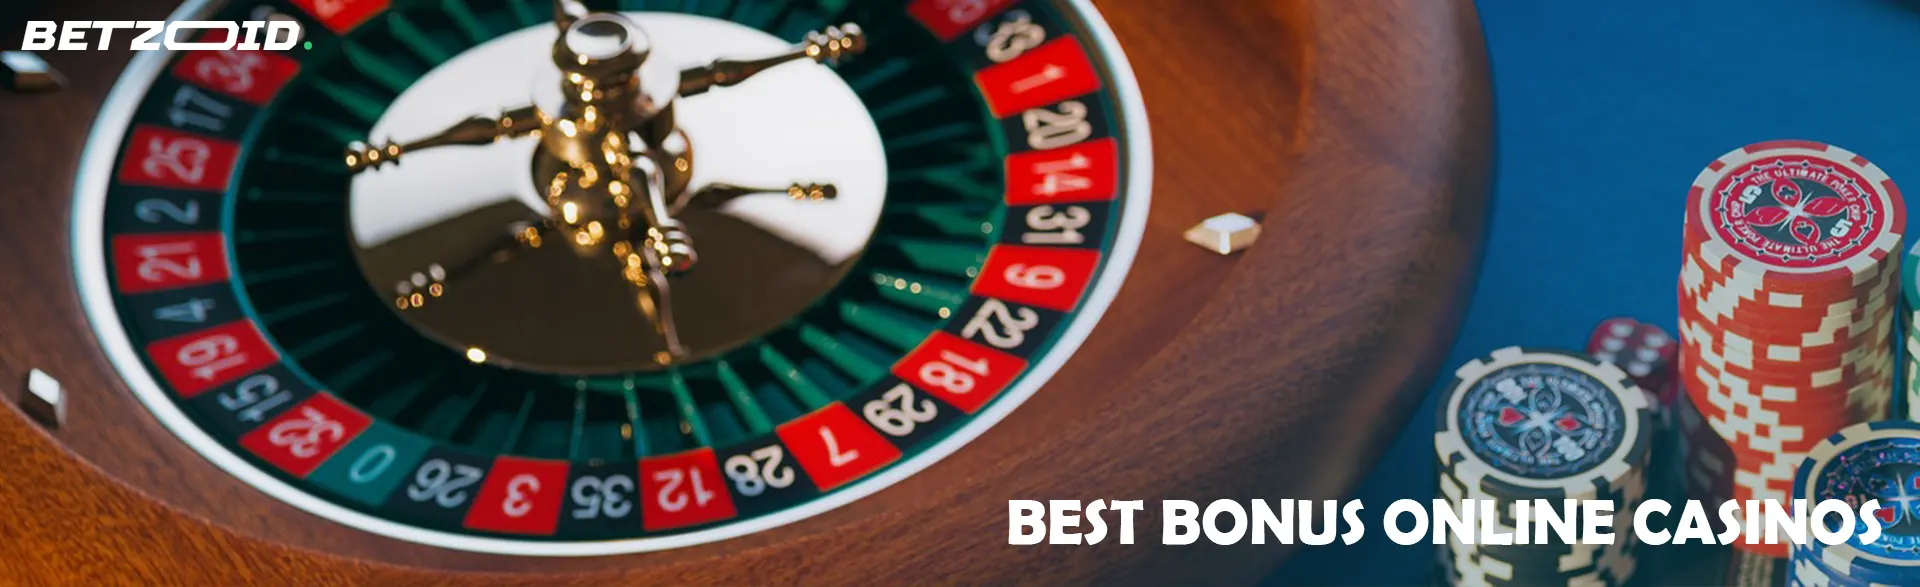 Best Bonus Online Casinos.